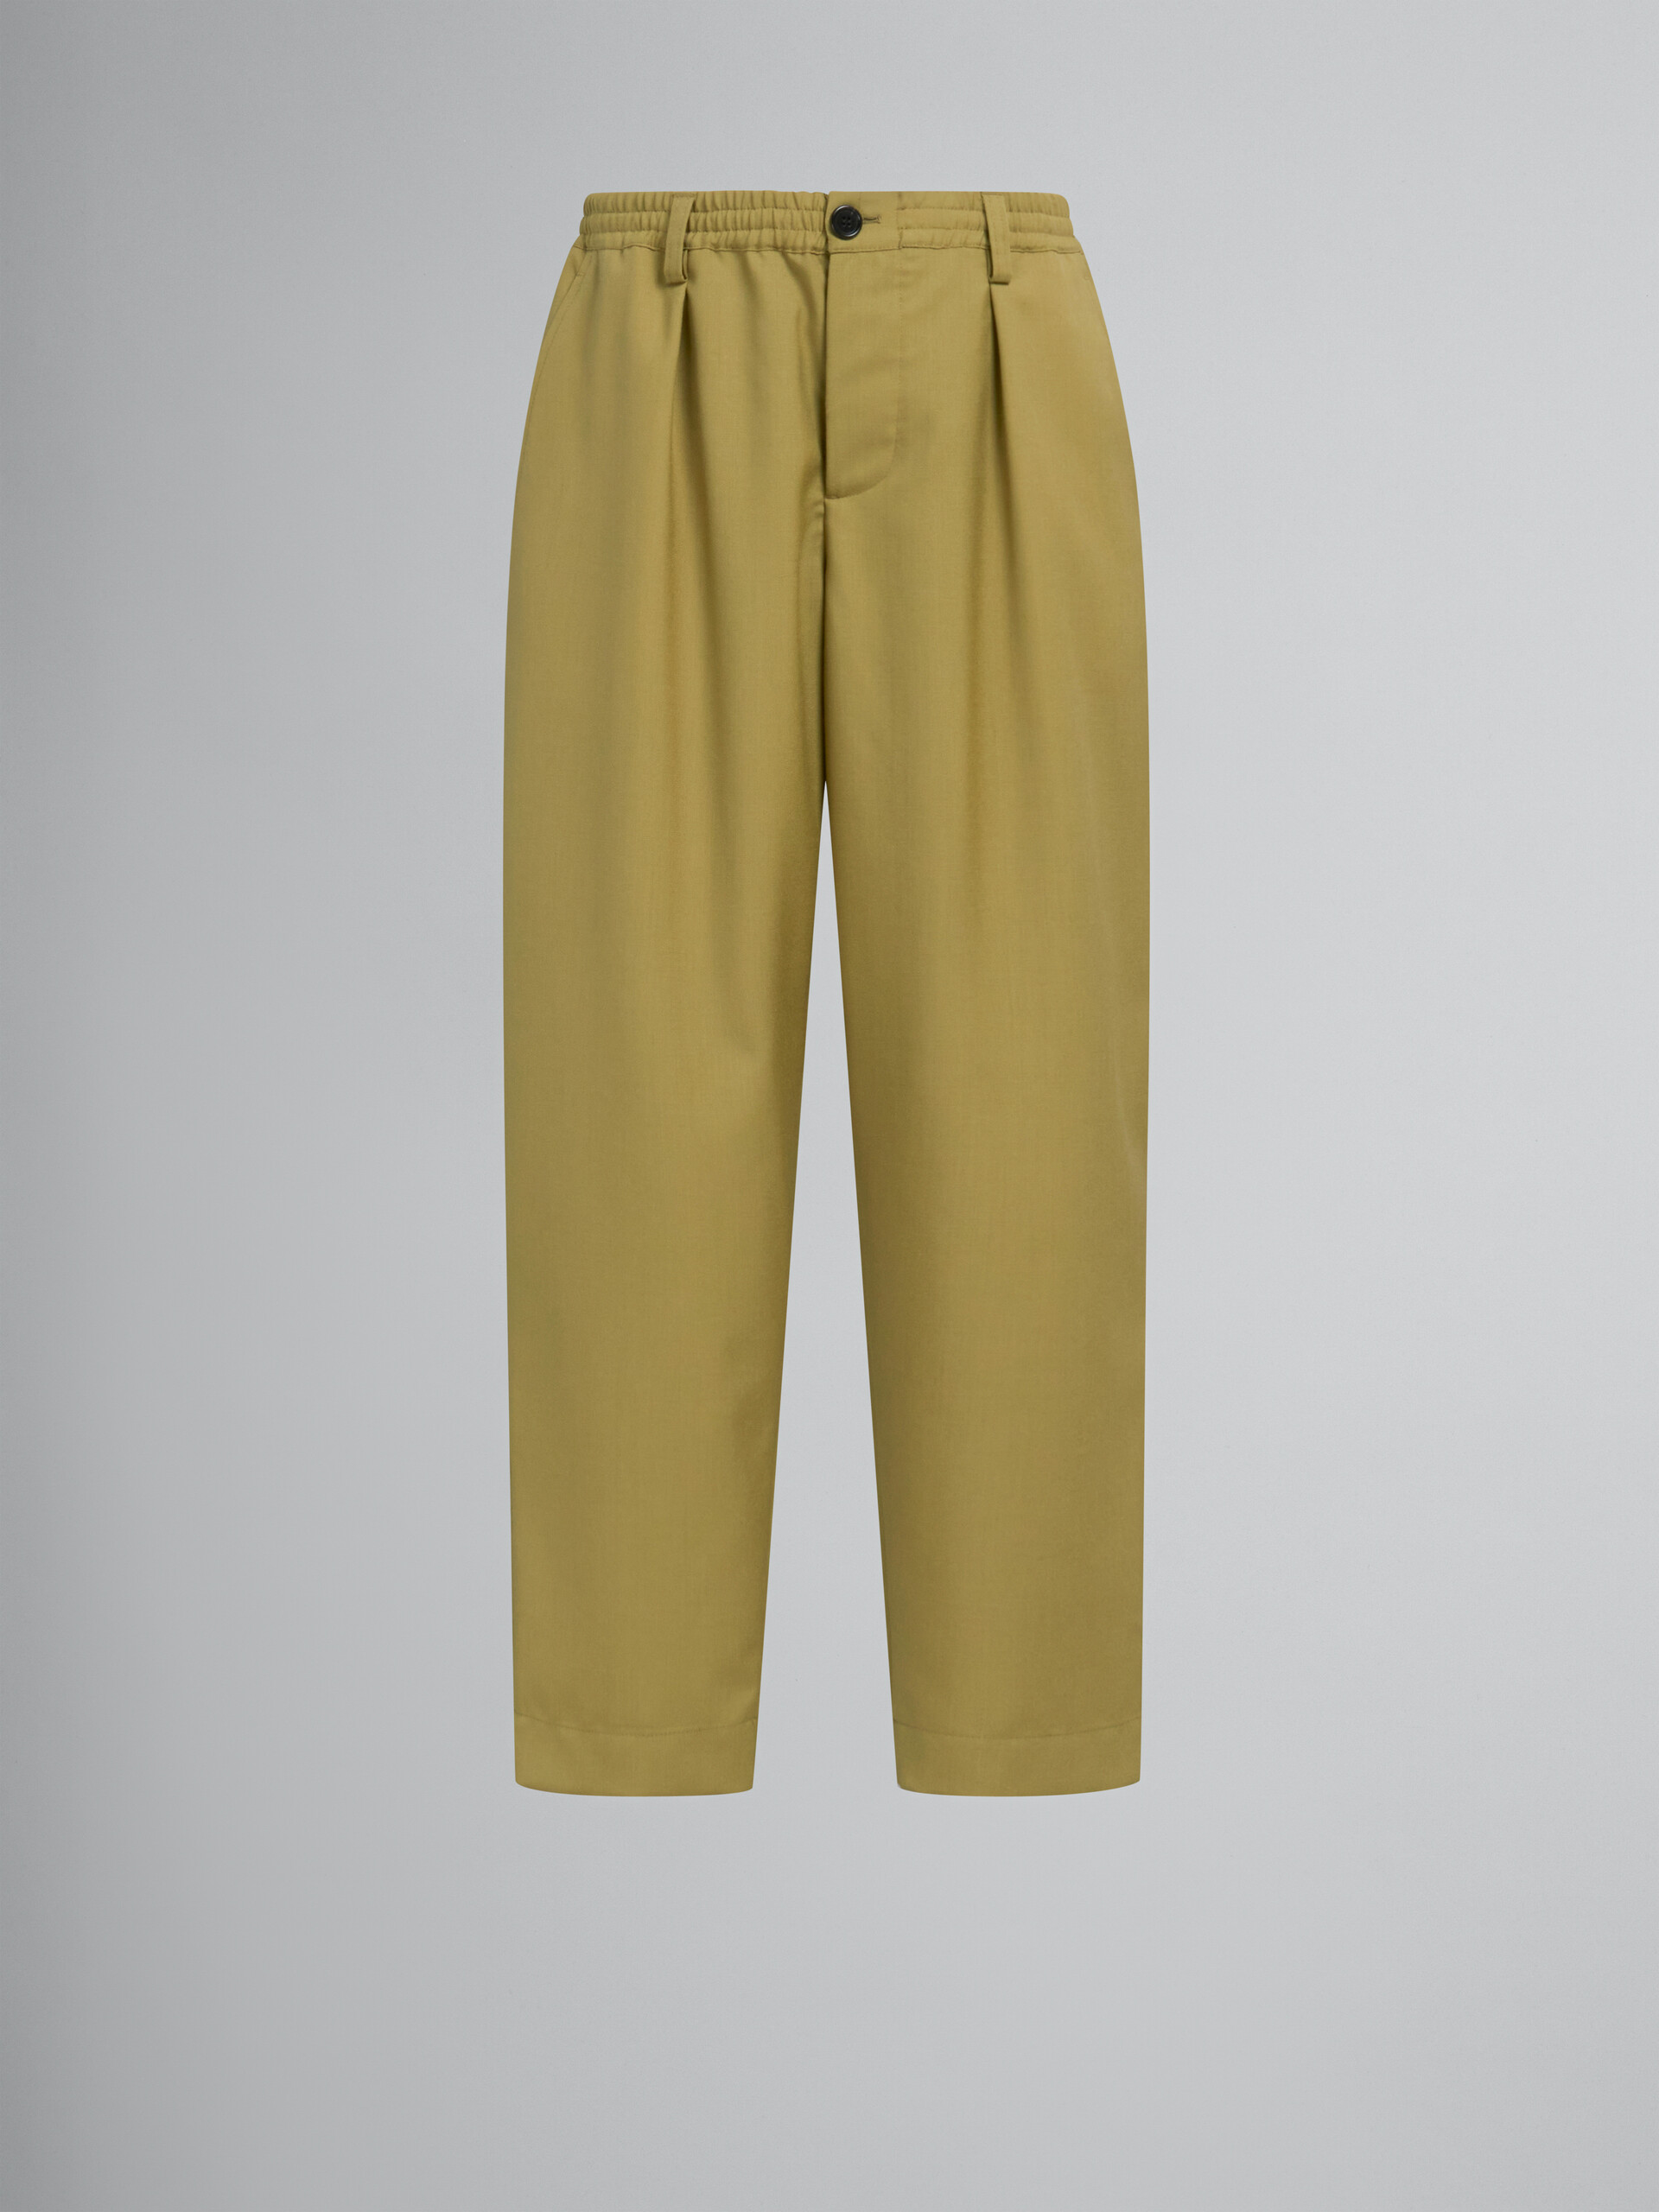 Pantalón de lana tropical azul intenso con cordón de ajuste en la cintura - Pantalones - Image 1